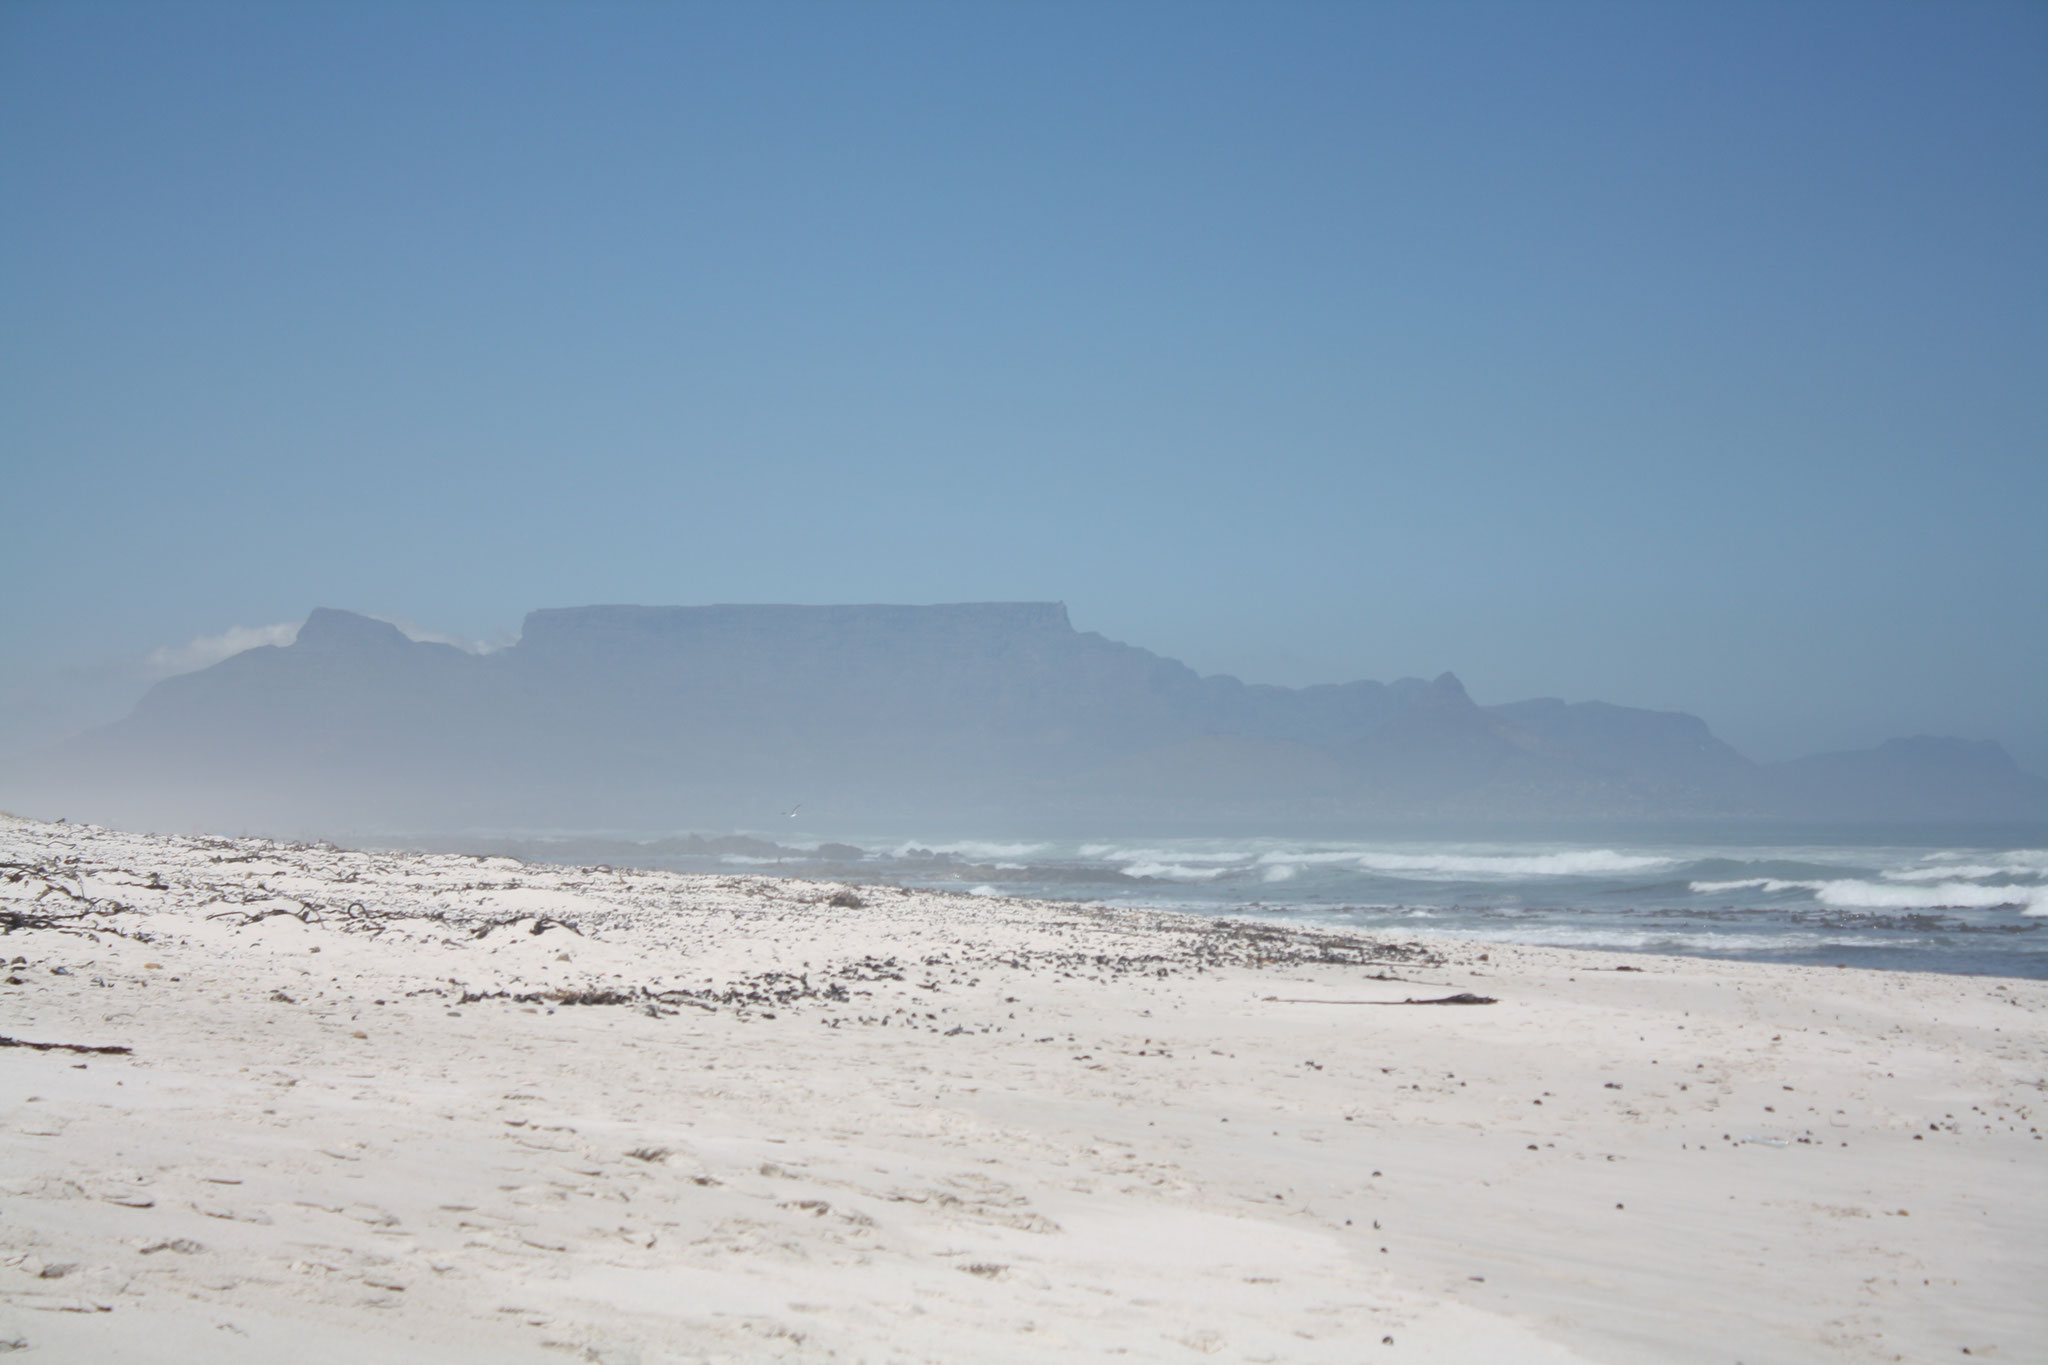 Salz- und Sandpartikel verstärken den Mystischen Eindruck von Table Mountain